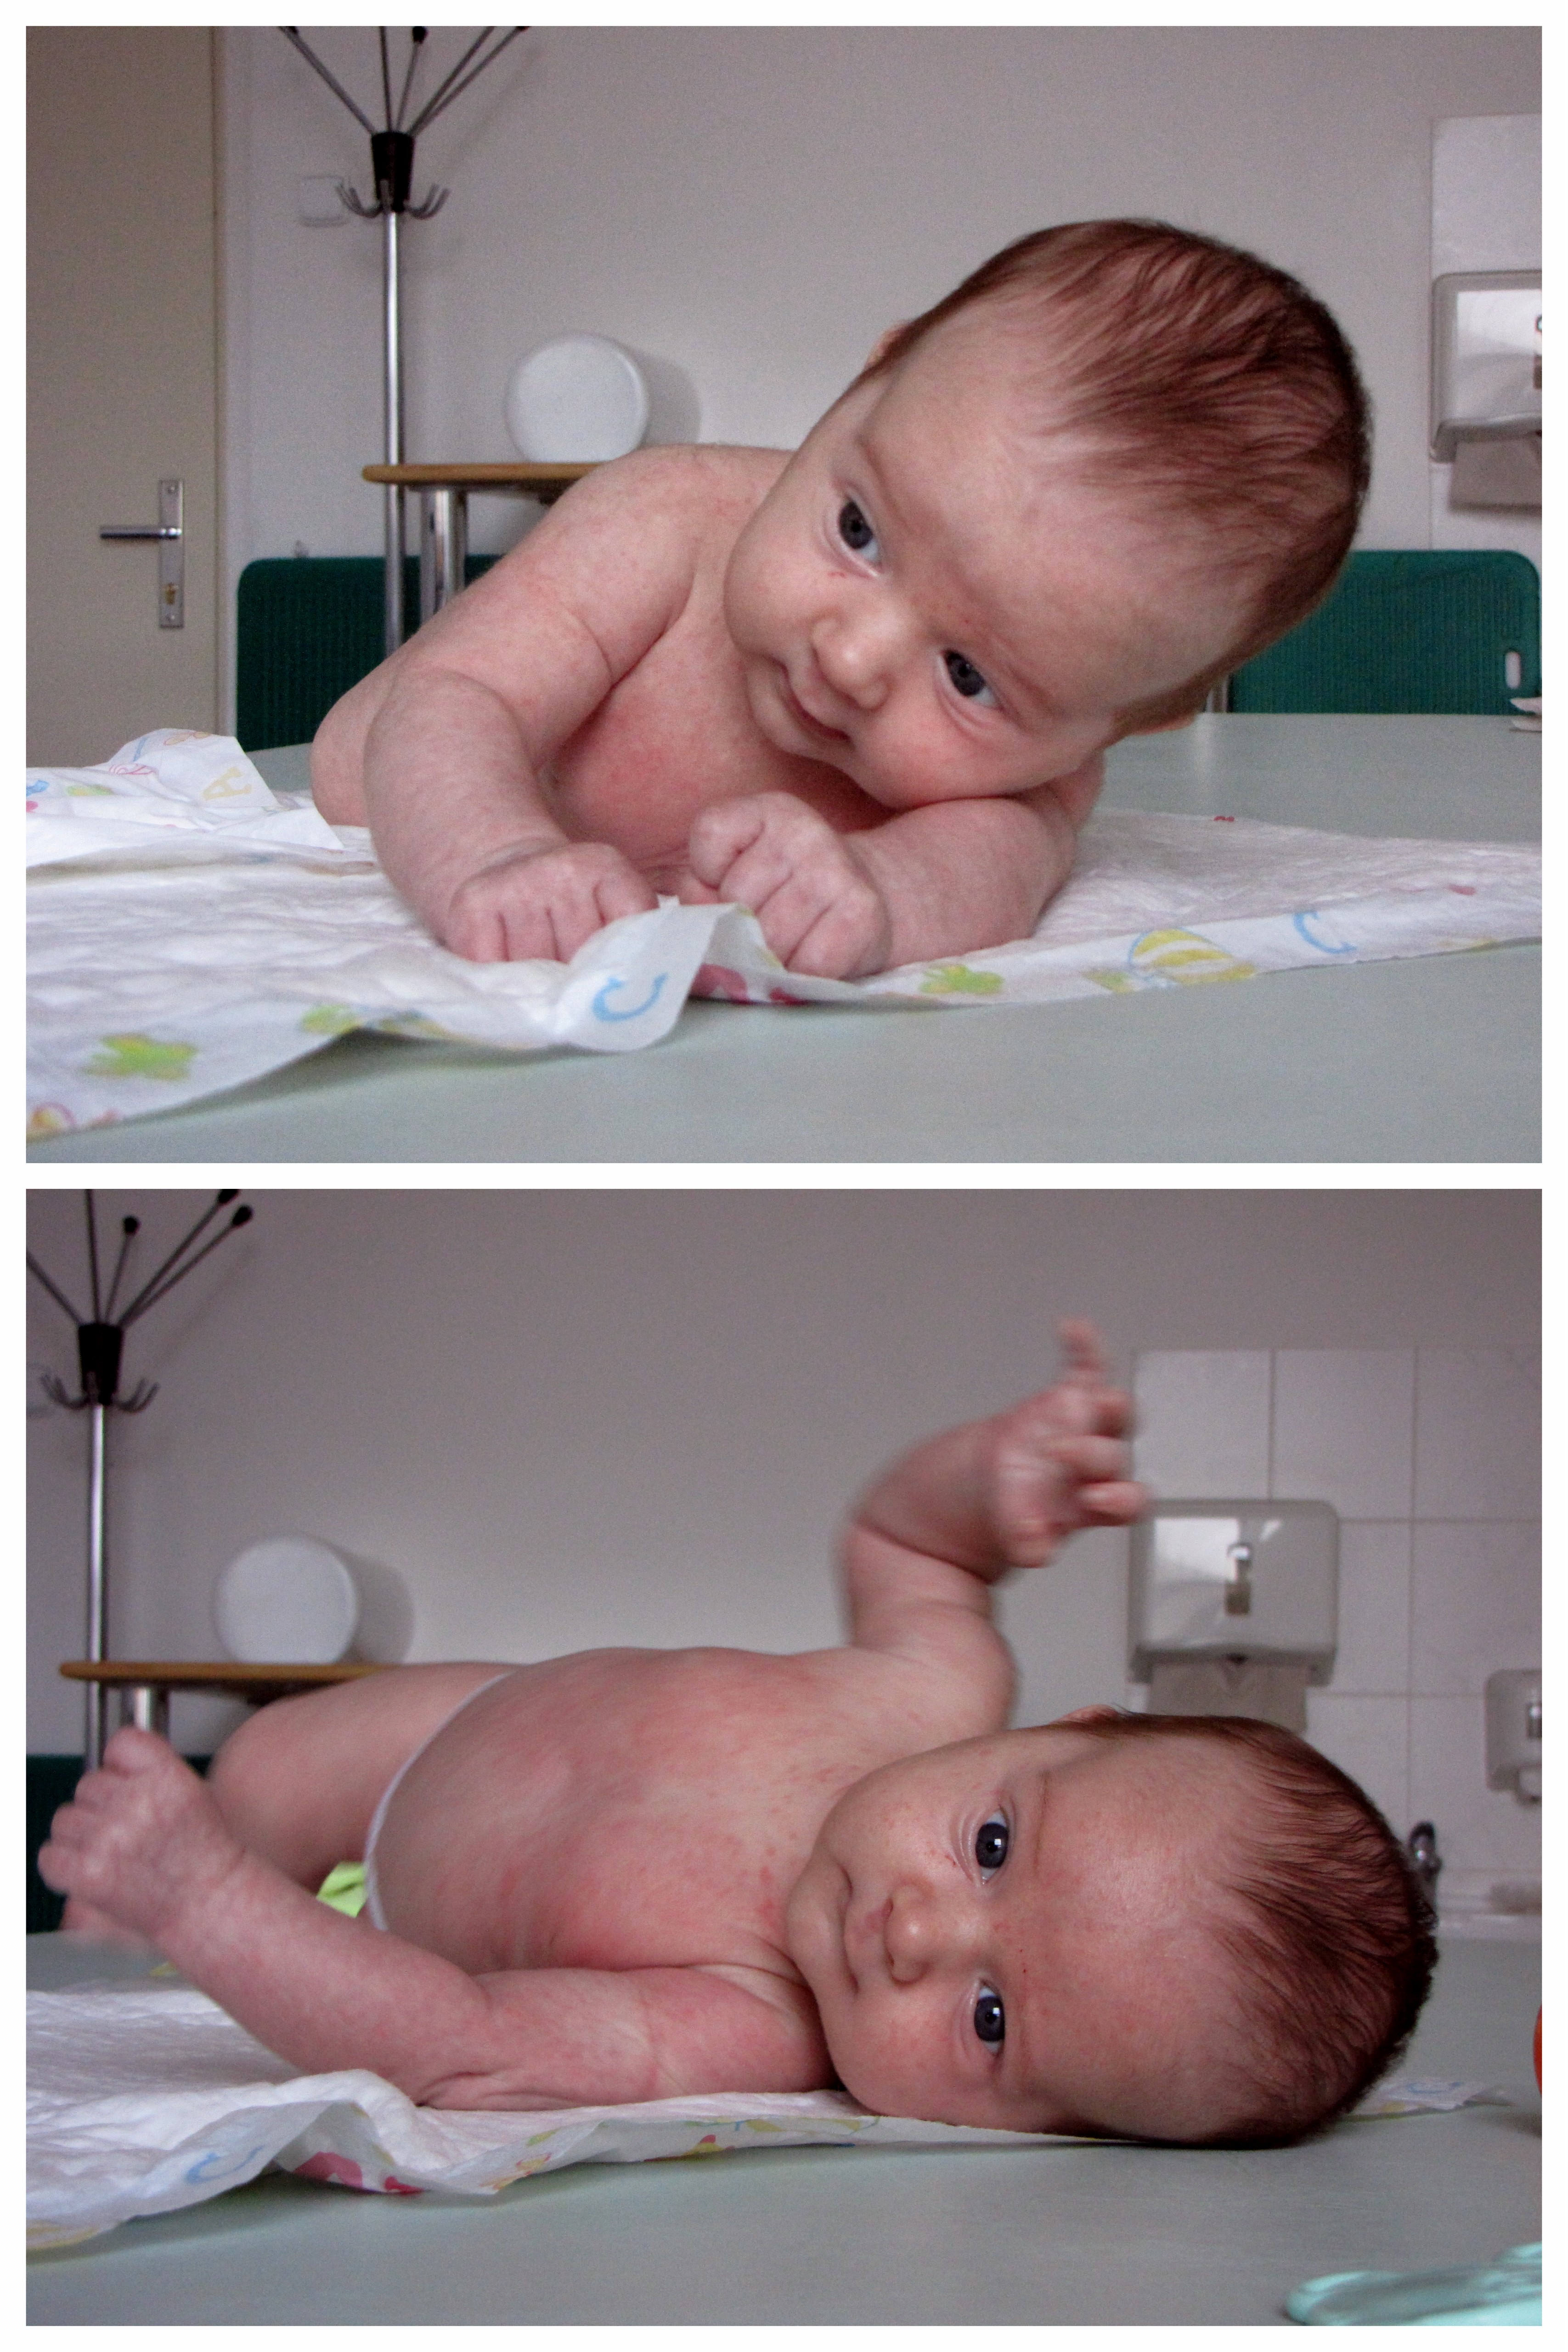 ilustrační foto: nestabilita kojence v poloze na břiše